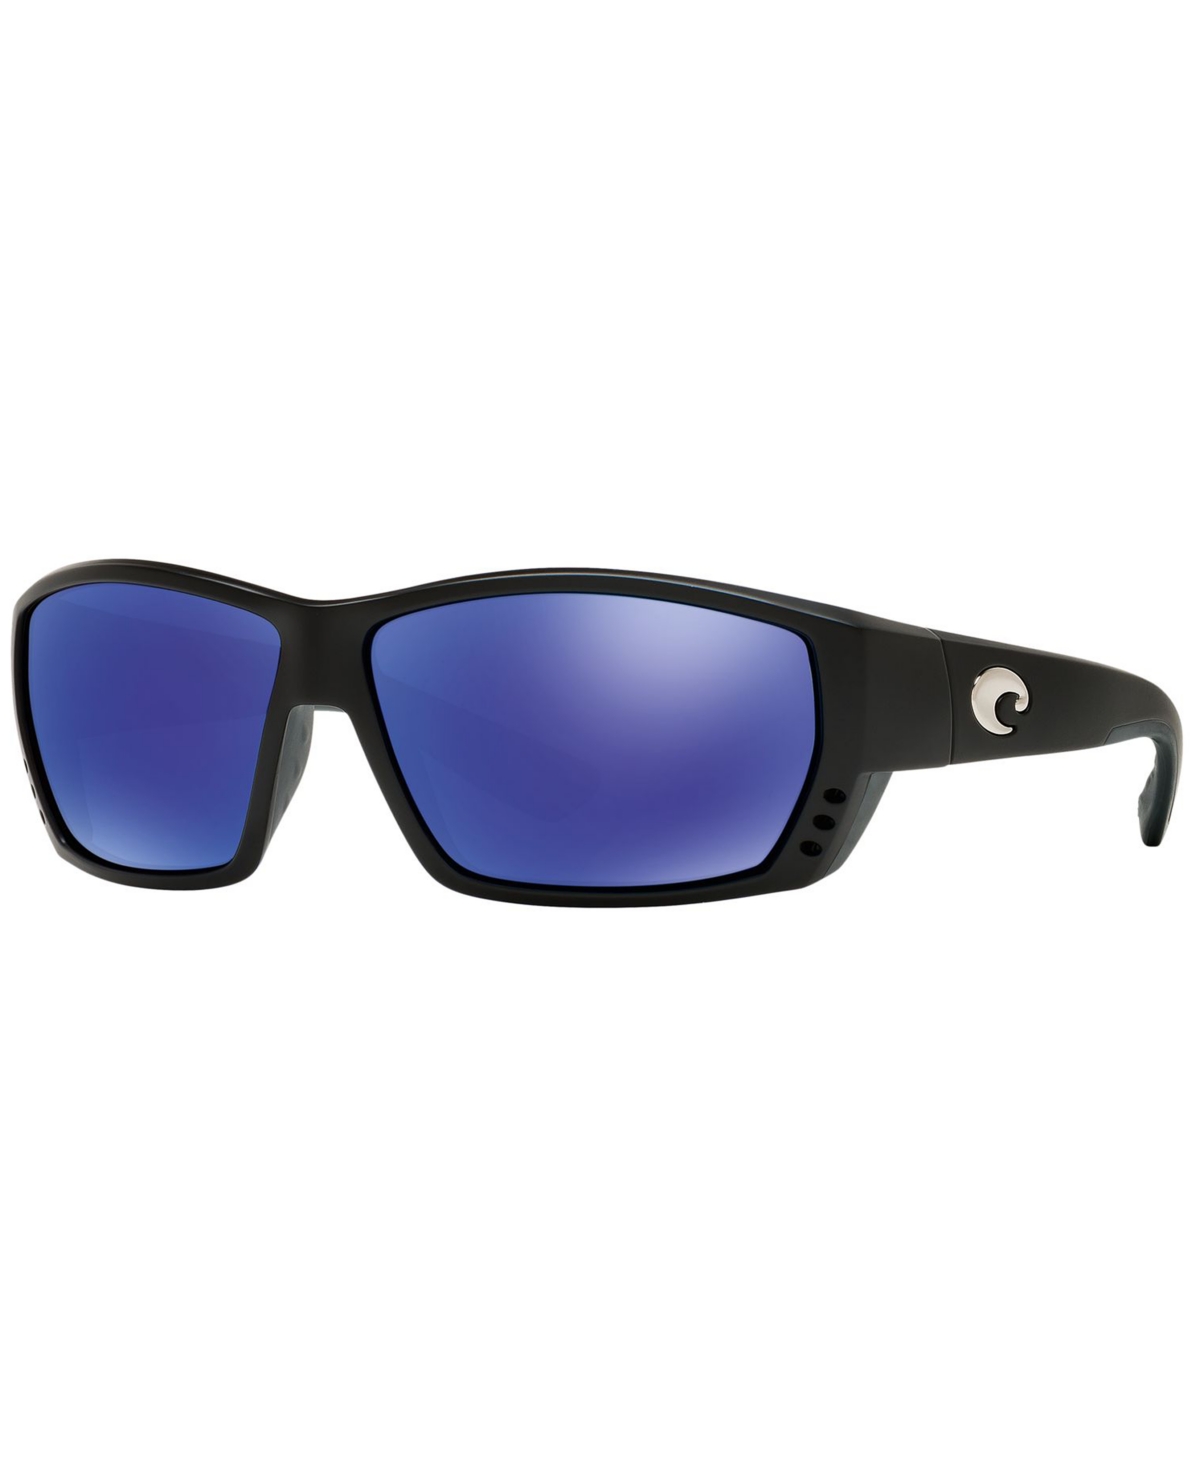 Costa Del Mar Polarized Sunglasses, Tuna Alley In Black Matte,blue Mirror Polar